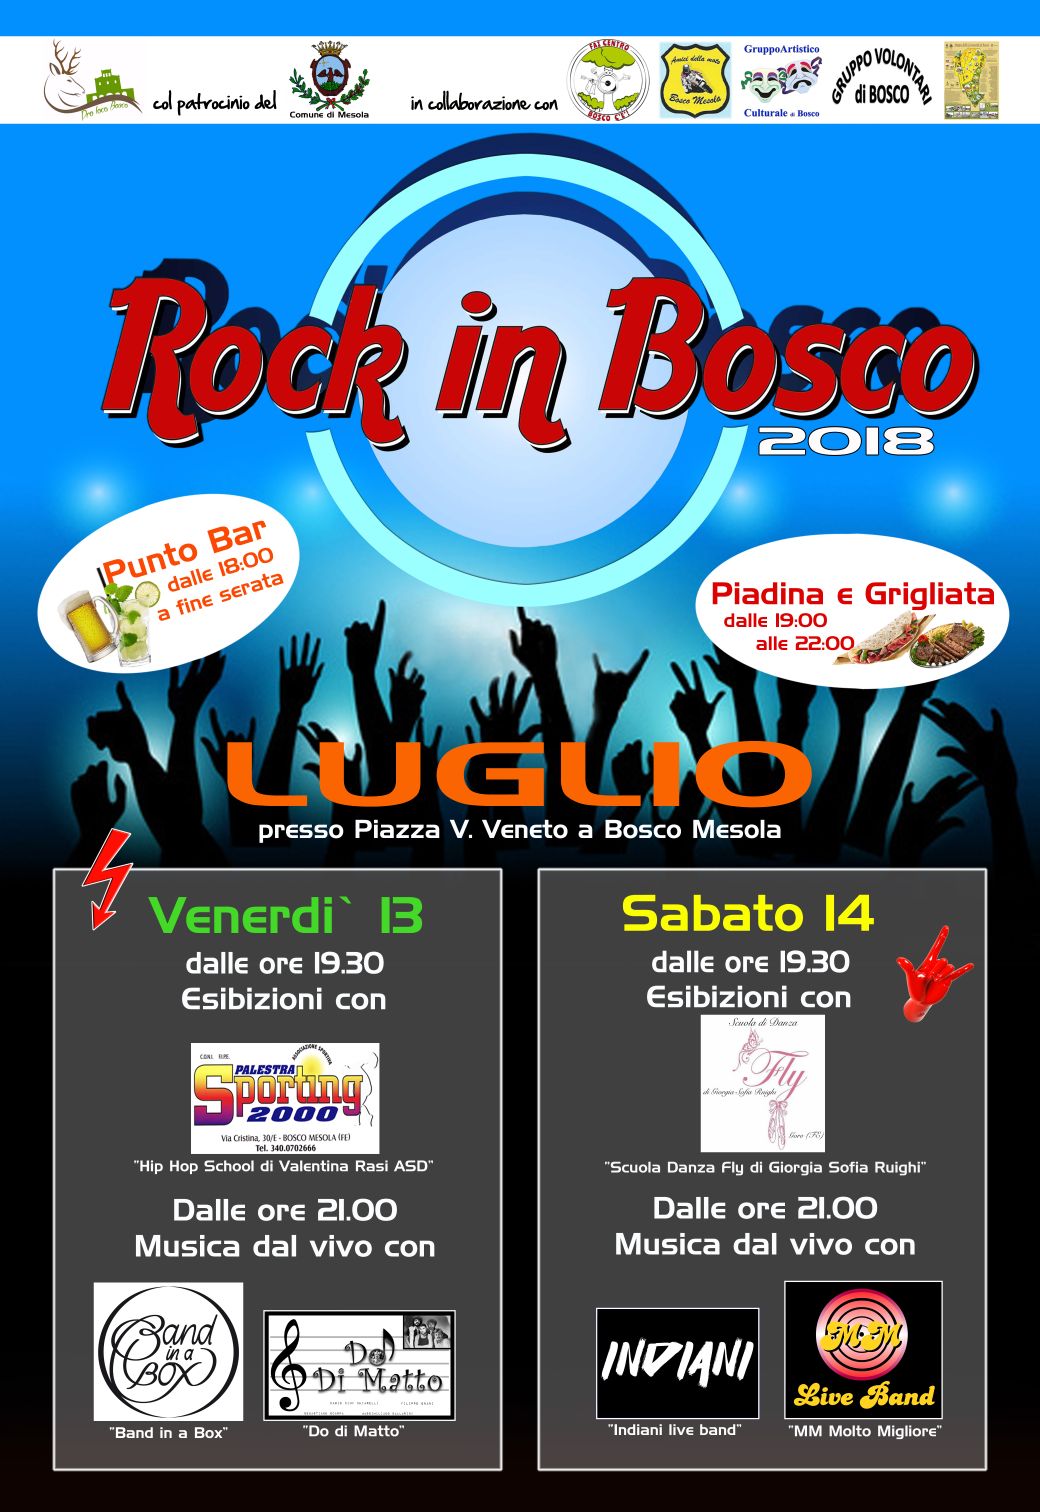 Rock in Bosco 2018